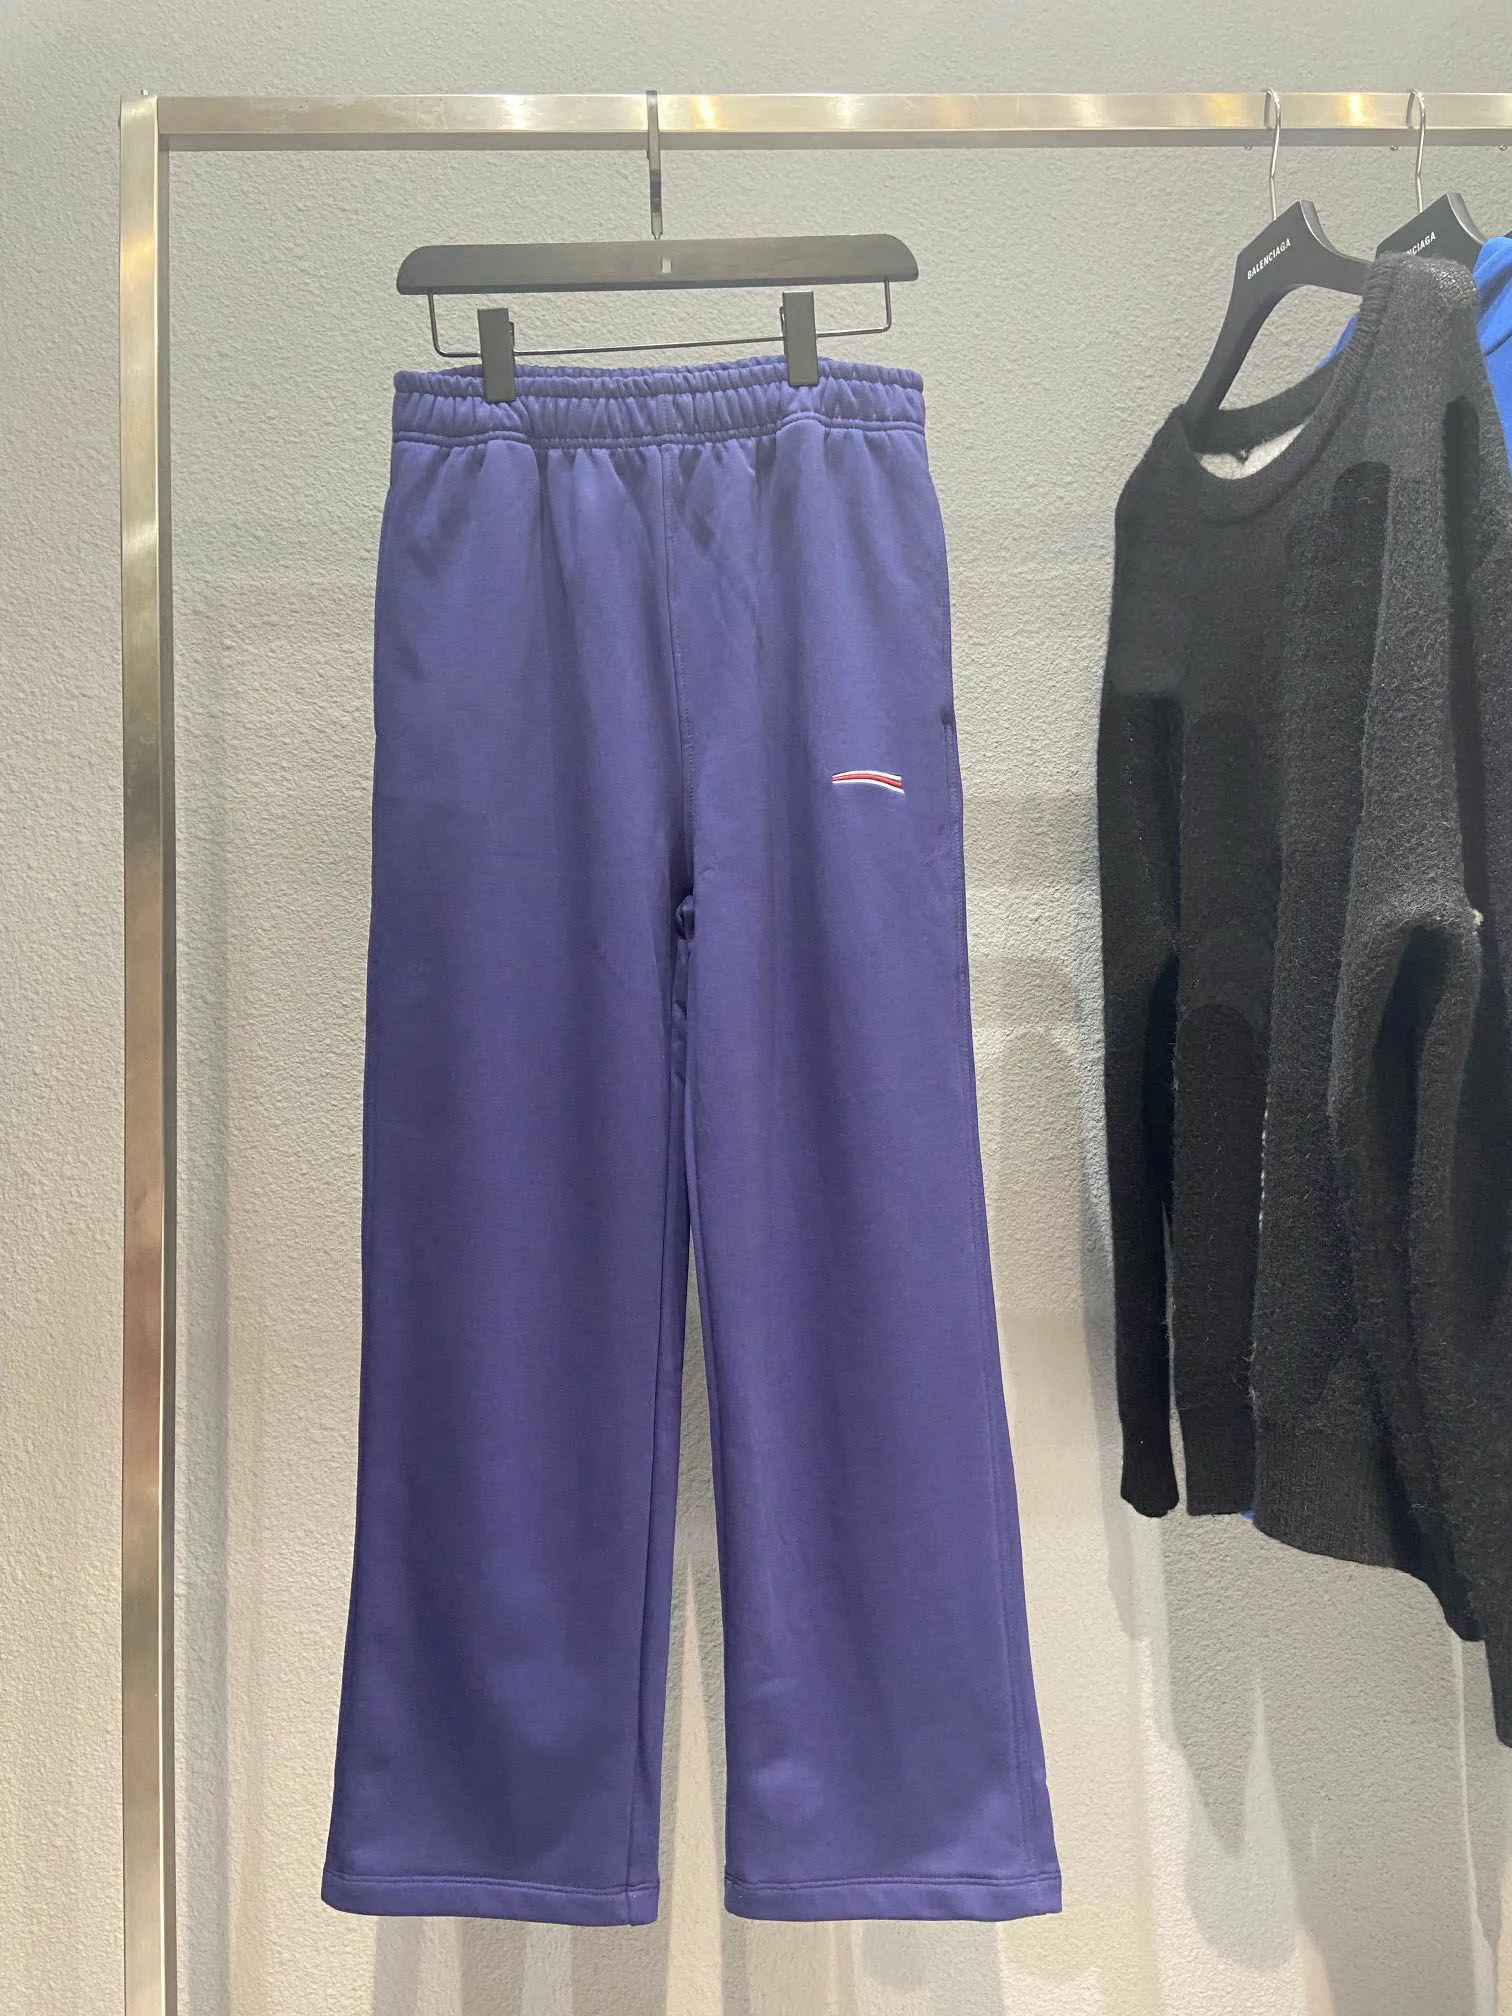 Topontwerper Luxe Pop Polar-stijl Street hiphop katoenen casual broek met rechte pijpen Trainingspakbroek patroonletters Topprint voor mannen en vrouwen